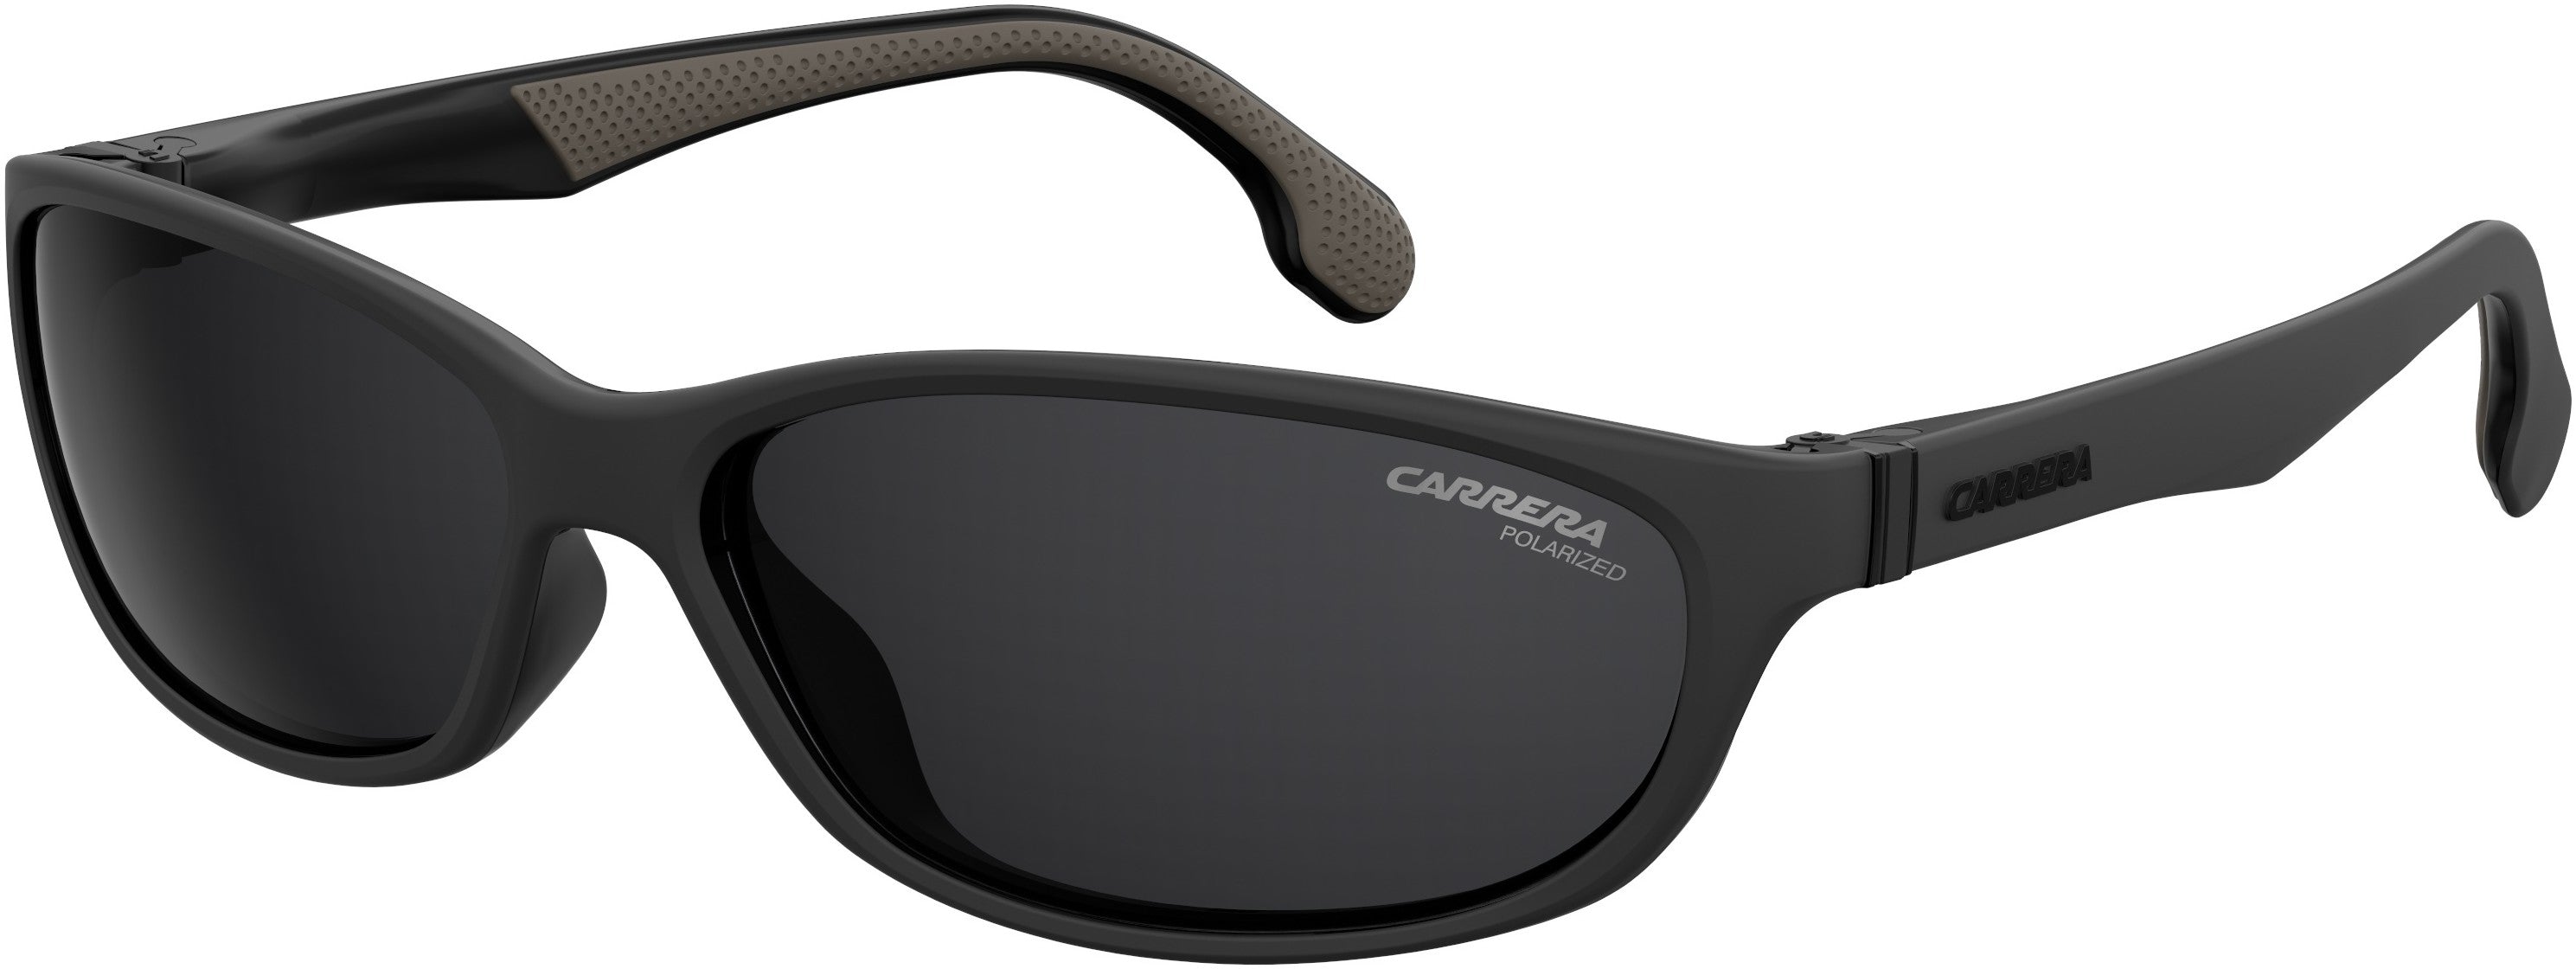  Carrera 5052/S Oval Modified Sunglasses 0003-0003  Matte Black (M9 Gray Pz)